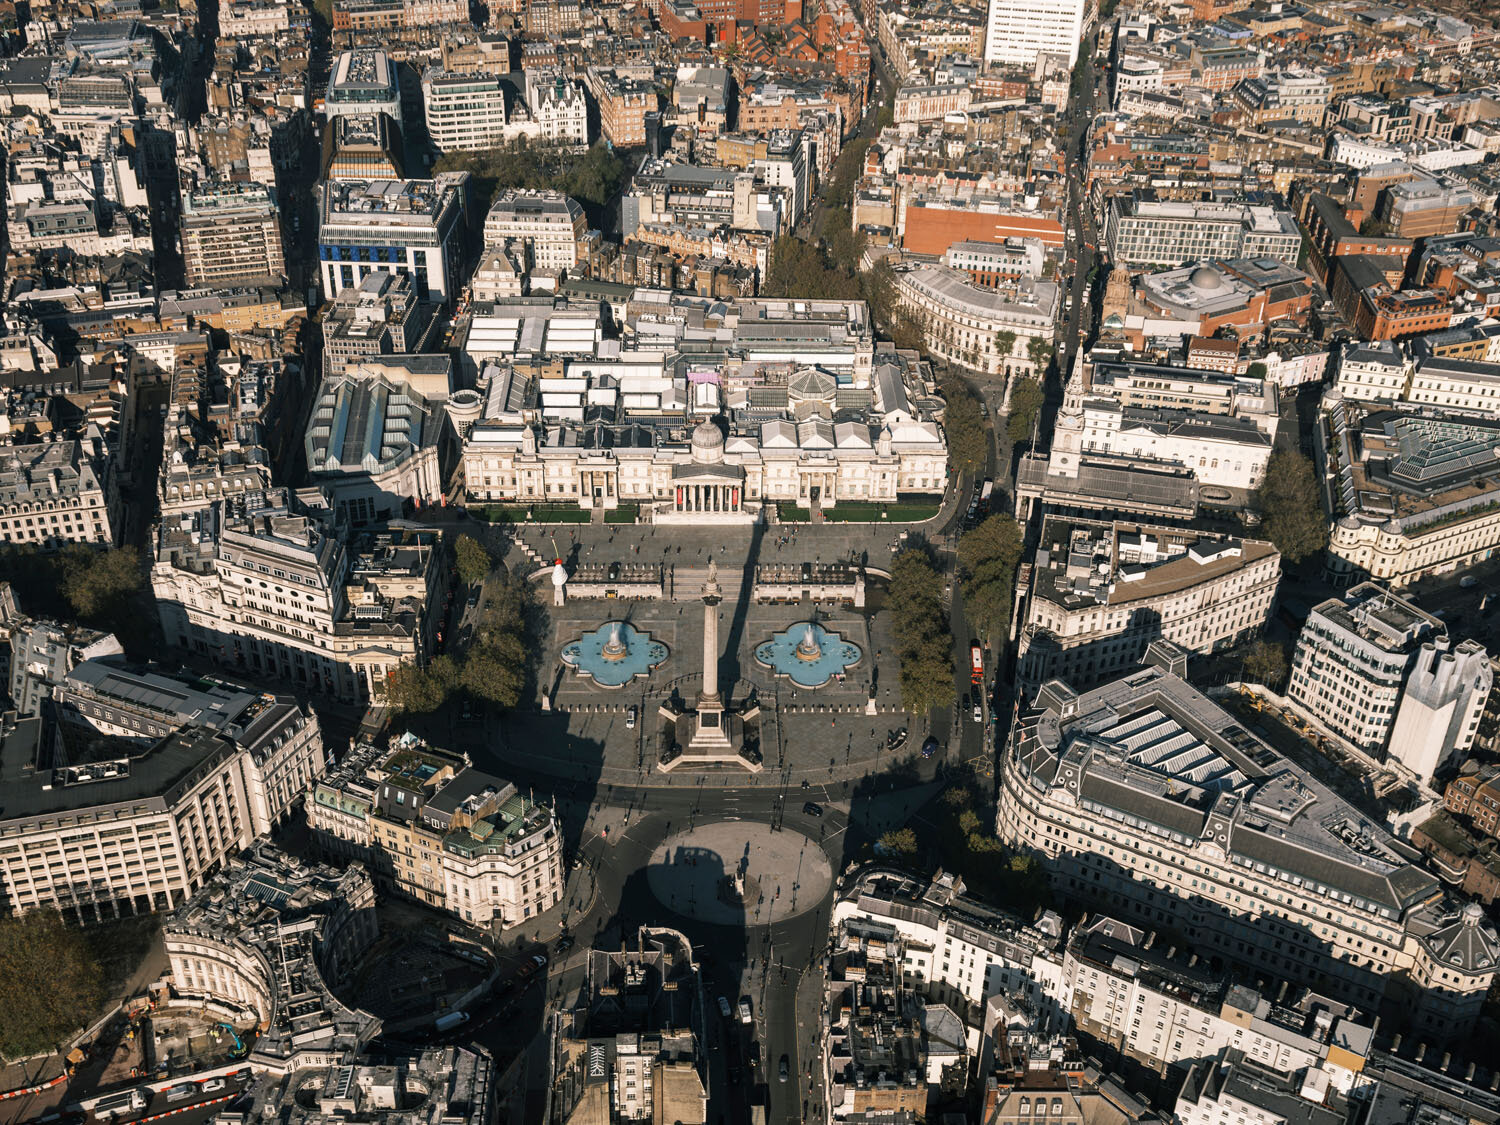  London Aerial View of Trafalgar Square 